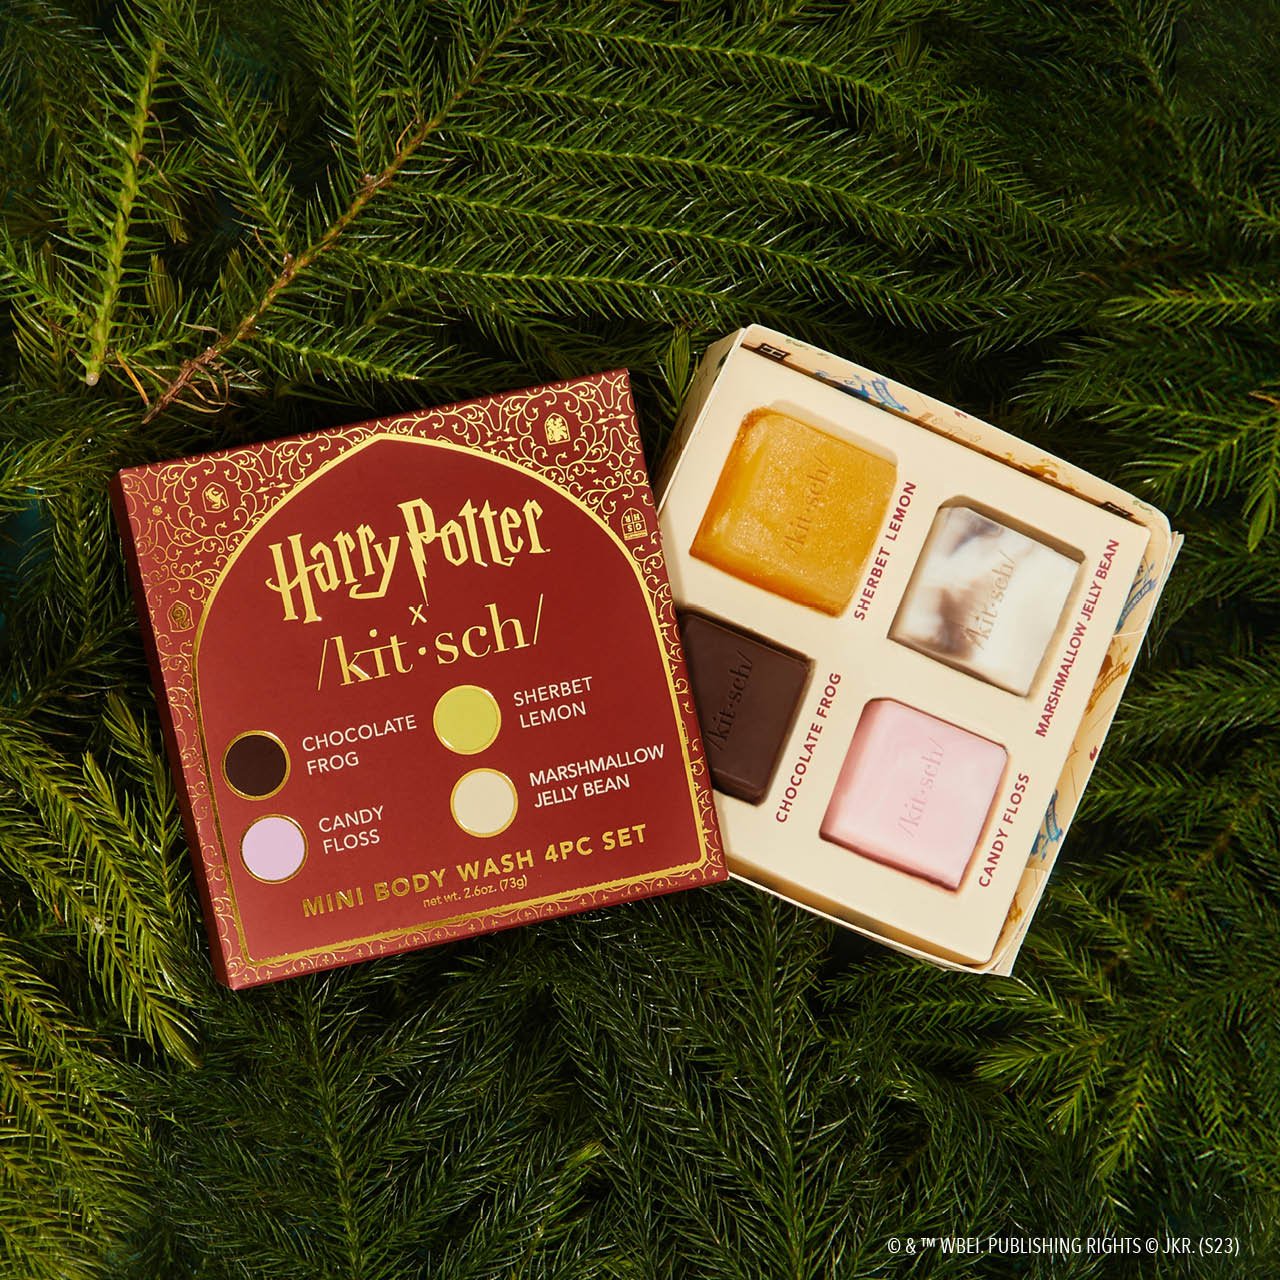 Harry Potter x Kitsch Set di lavaggi per il corpo da 4 pezzi